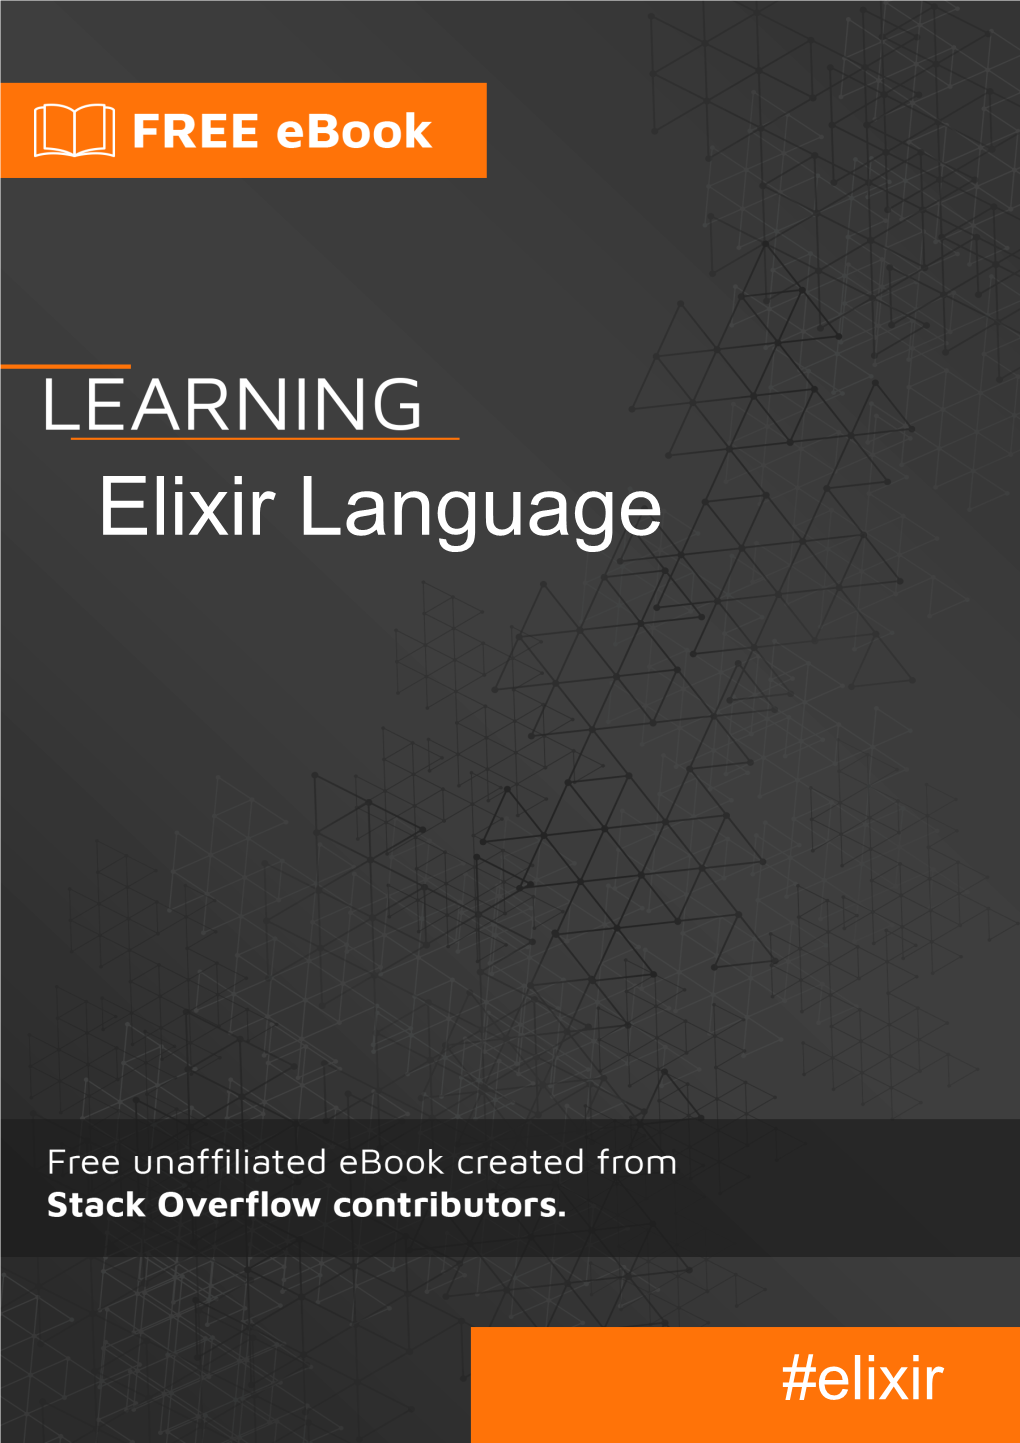 Elixir Language